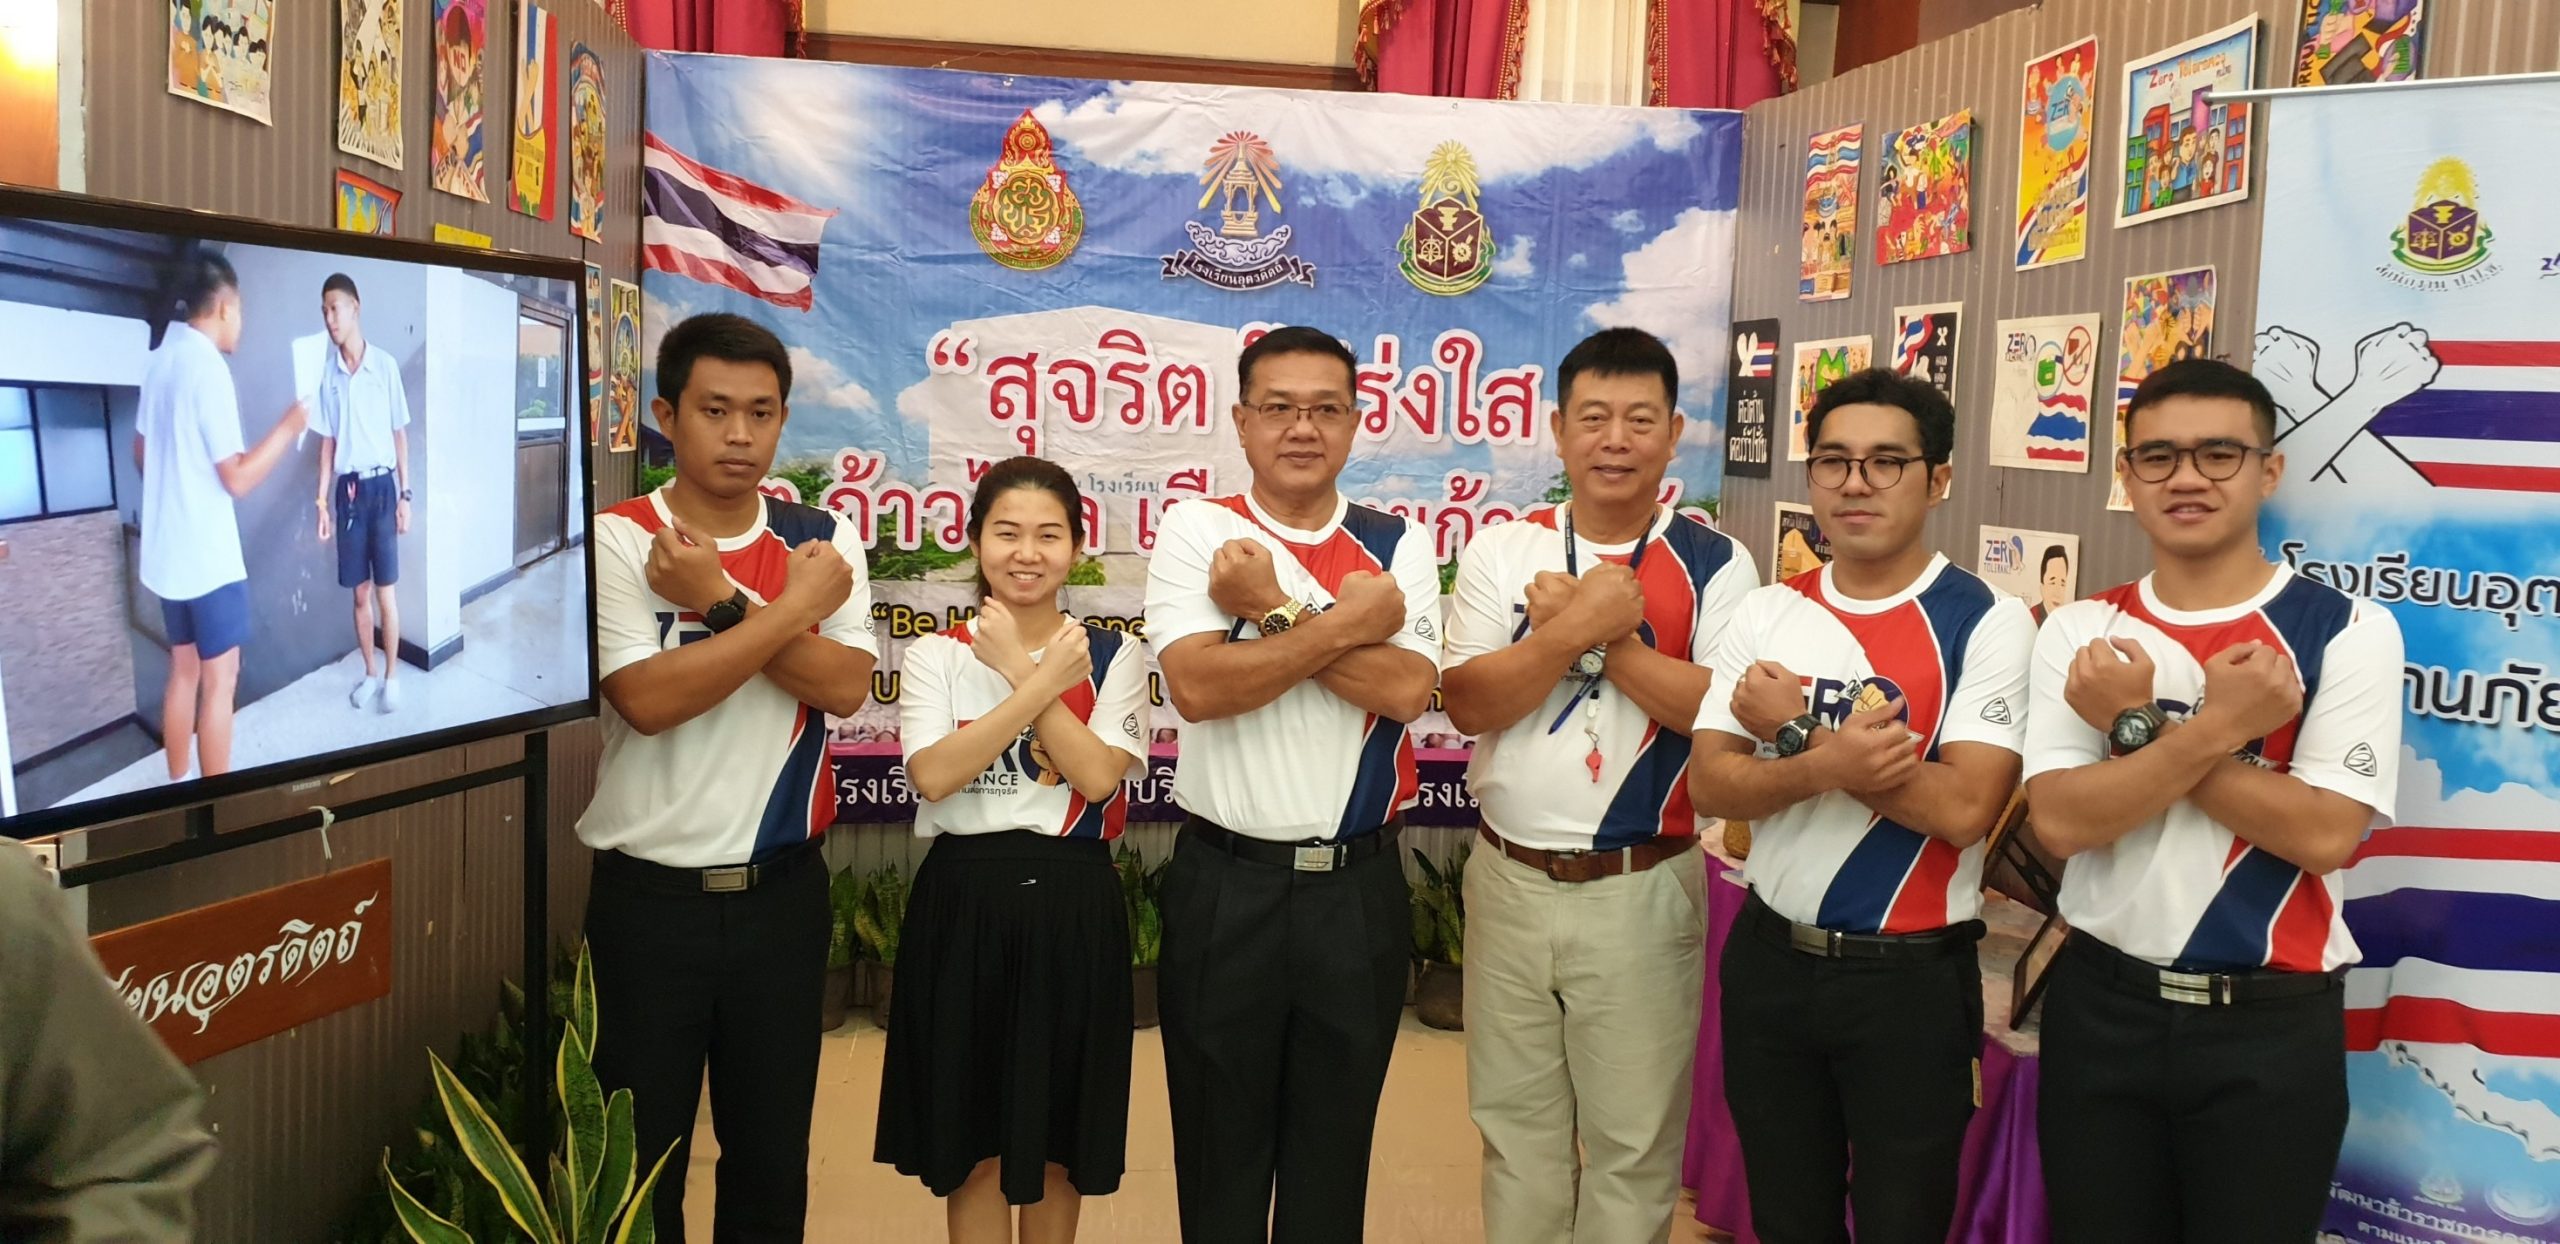 โรงเรียนอุตรดิตถ์ เข้าร่วมจัดนิทรรศการและนำเสนอผลงาน ในงานวันต่อต้านคอร์รัปชันสากล (ประเทศไทย)